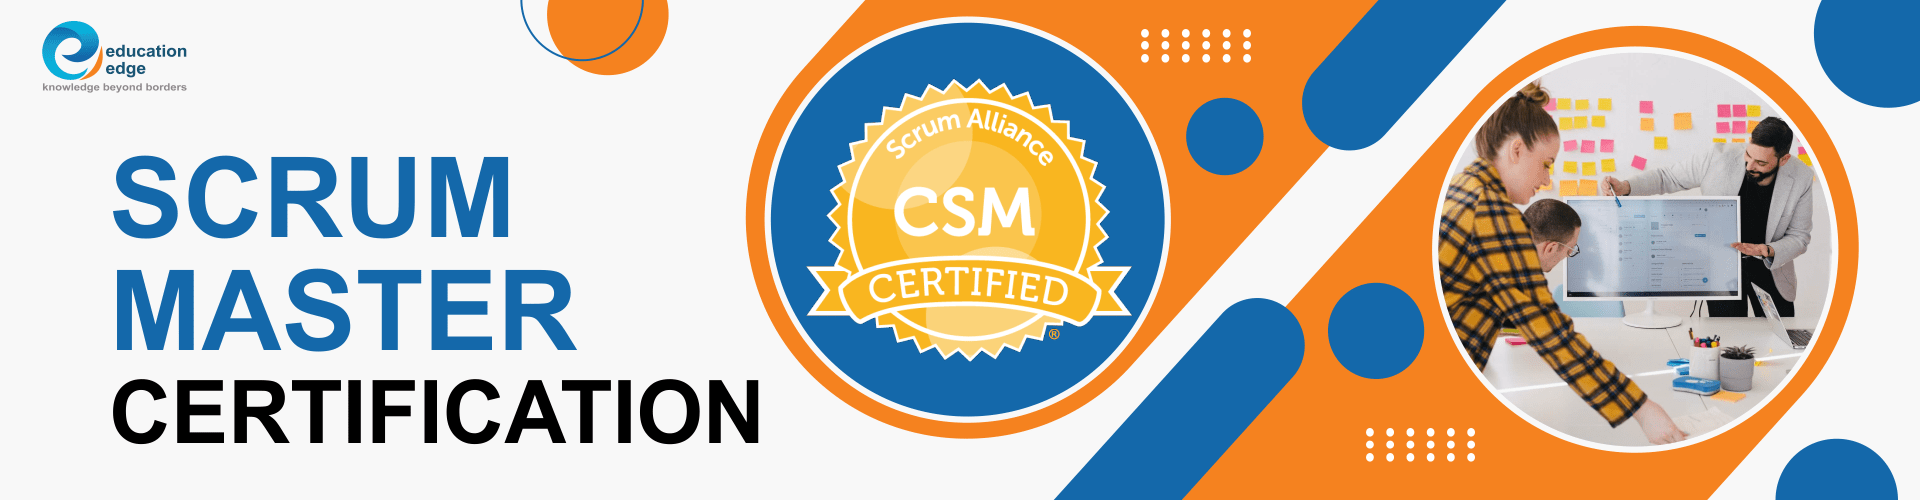 Scrum master Certification